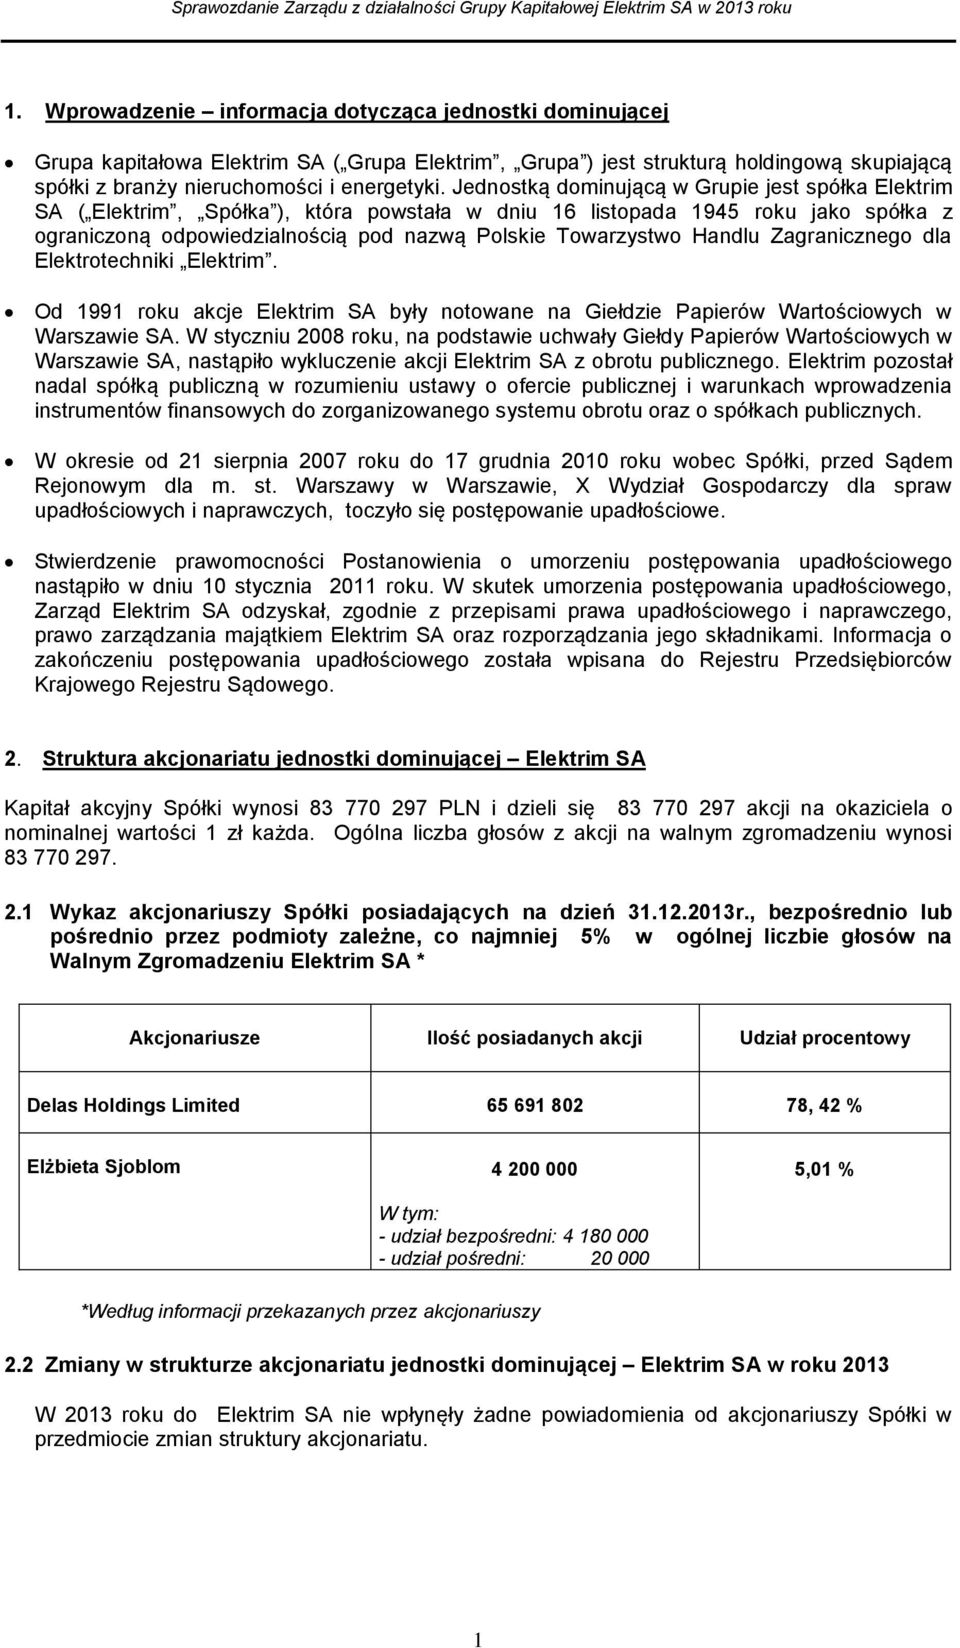 Handlu Zagranicznego dla Elektrotechniki Elektrim. Od 1991 roku akcje Elektrim SA były notowane na Giełdzie Papierów Wartościowych w Warszawie SA.